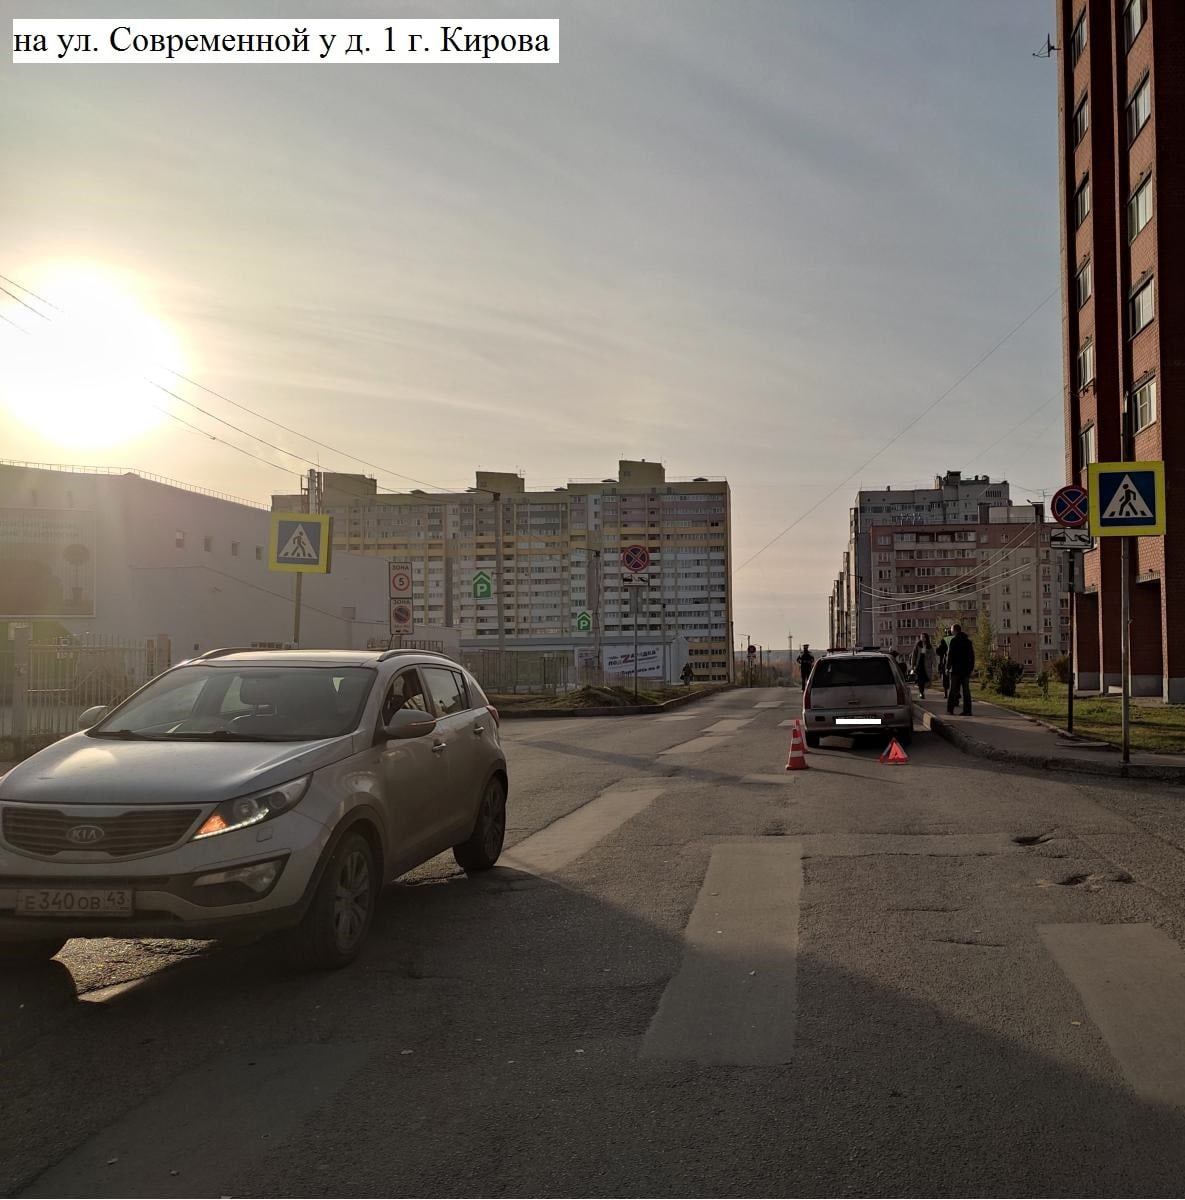 В Кирове водитель Mitsubishi Lancer сбил 8-летнюю девочку: проводится проверка